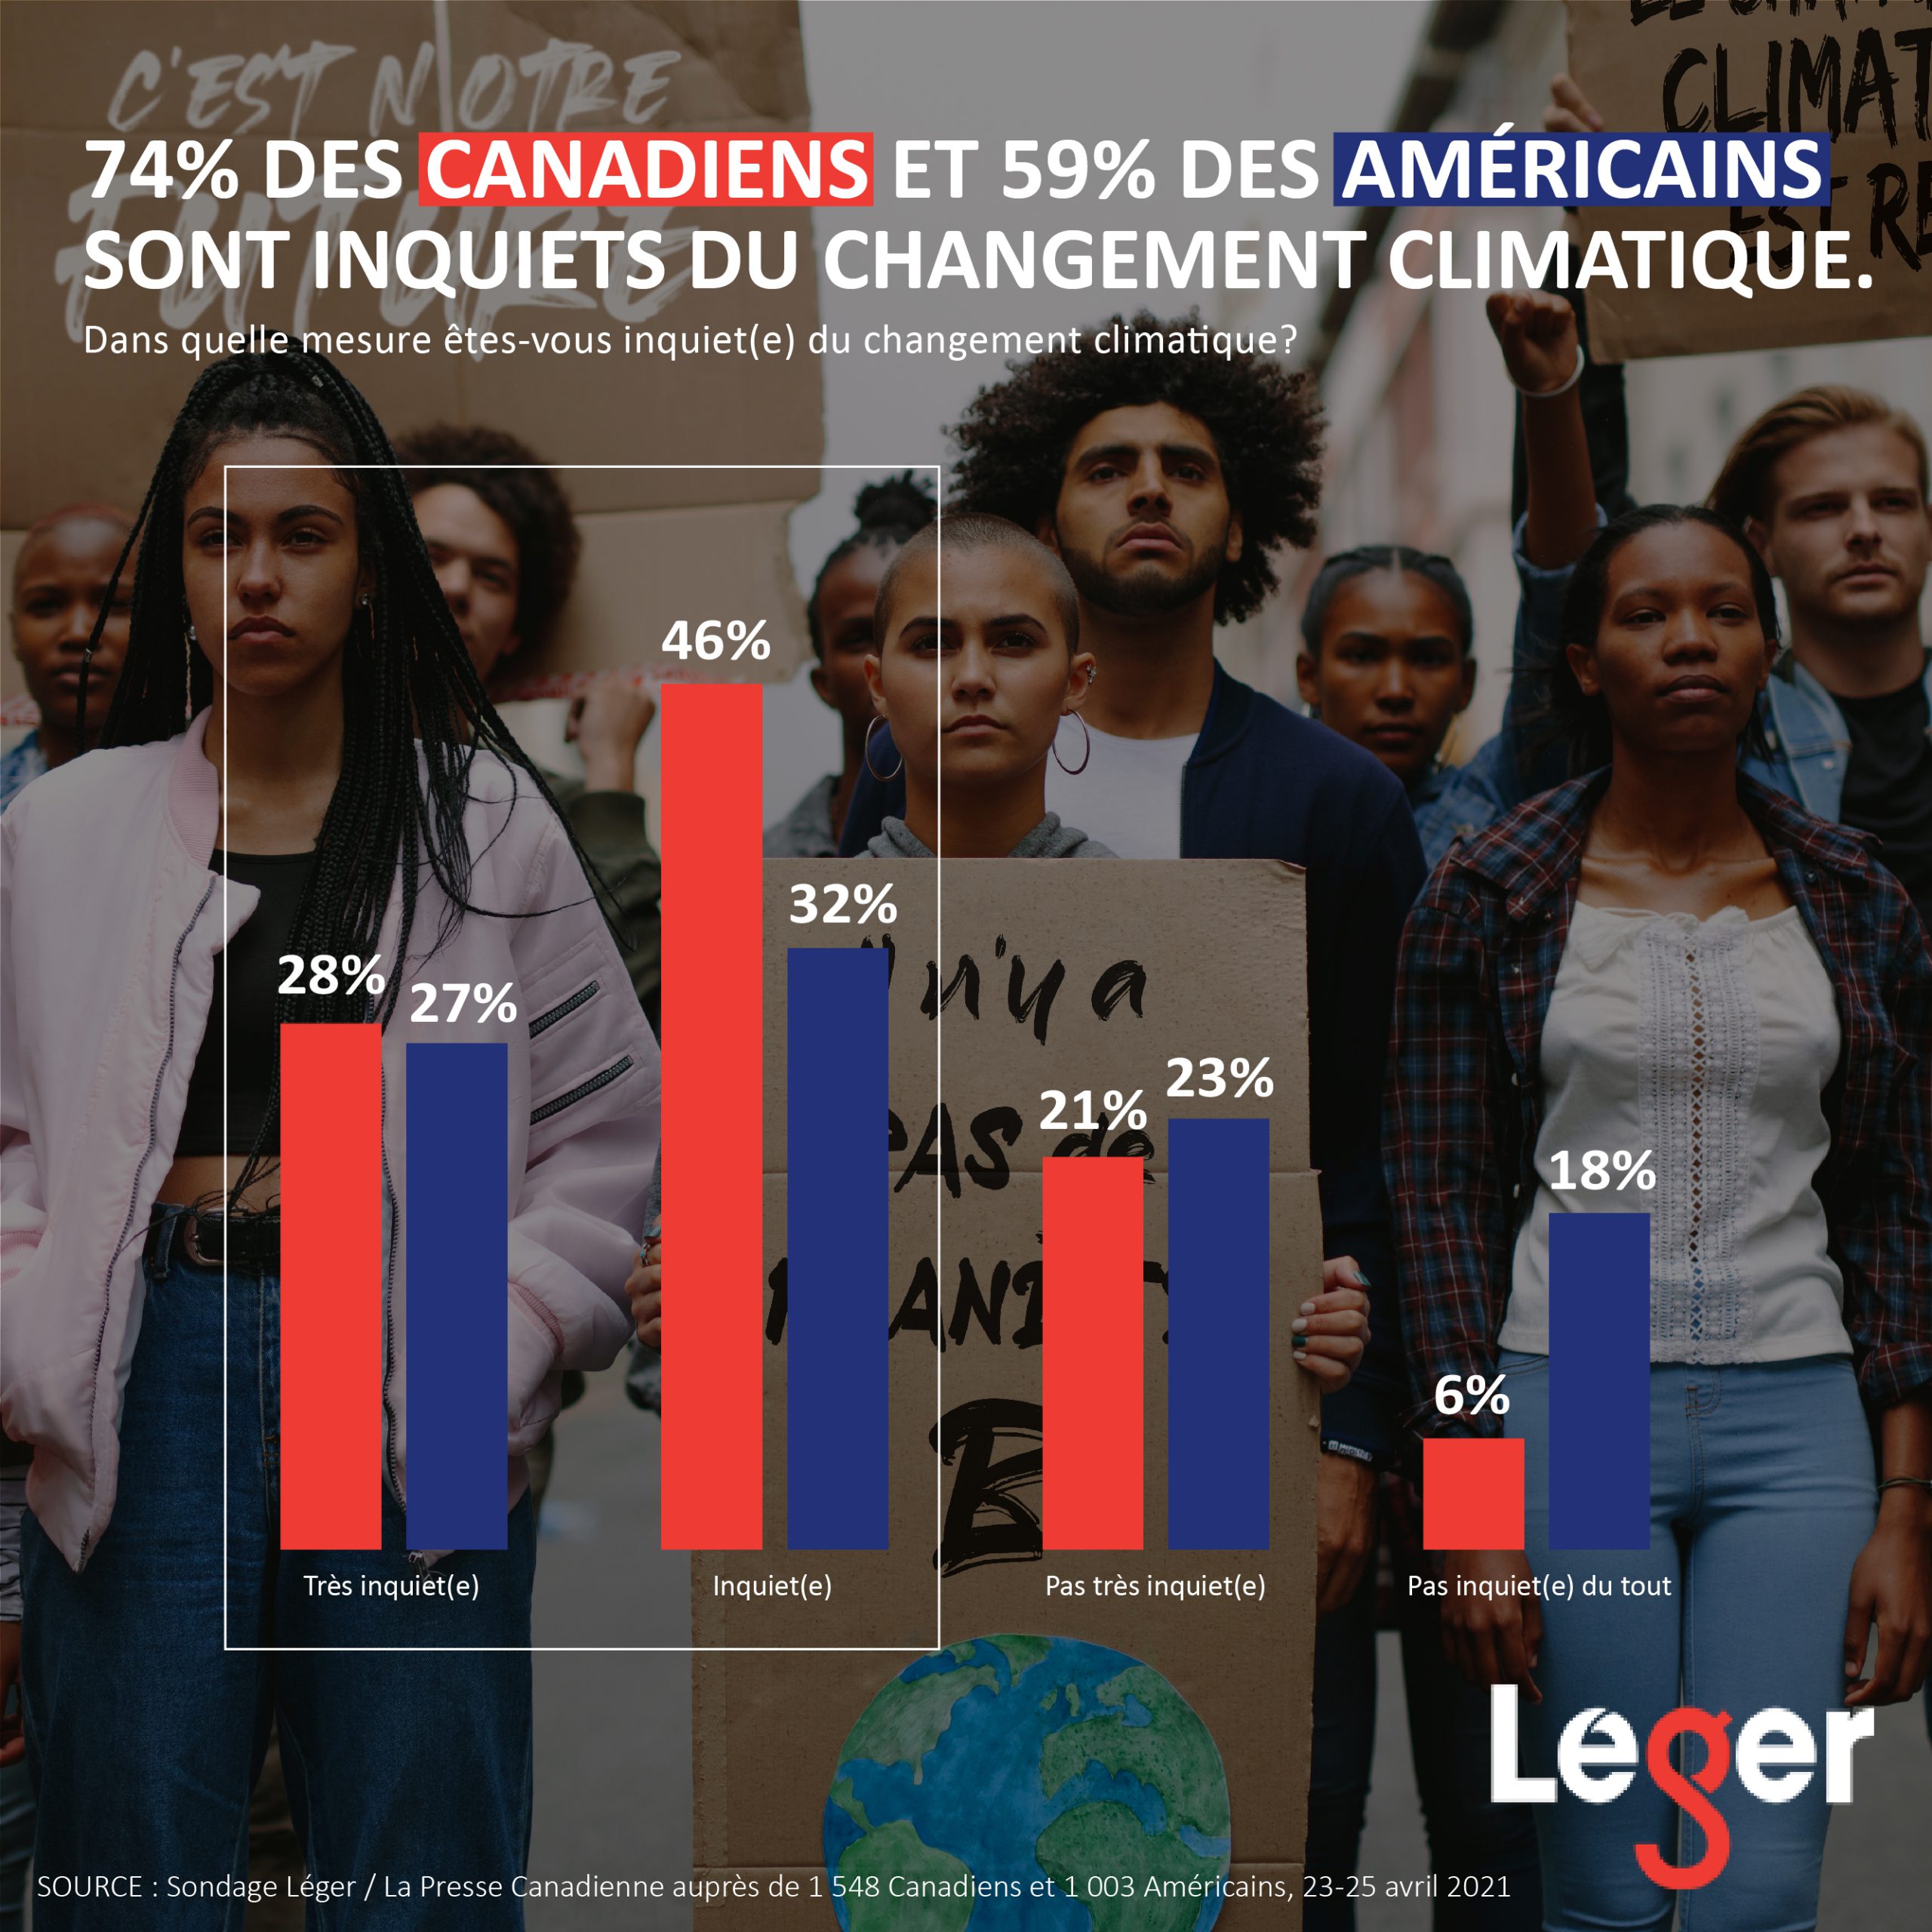 74% des Canadiens et 59% des Américains sont inquiets du changement climatique.